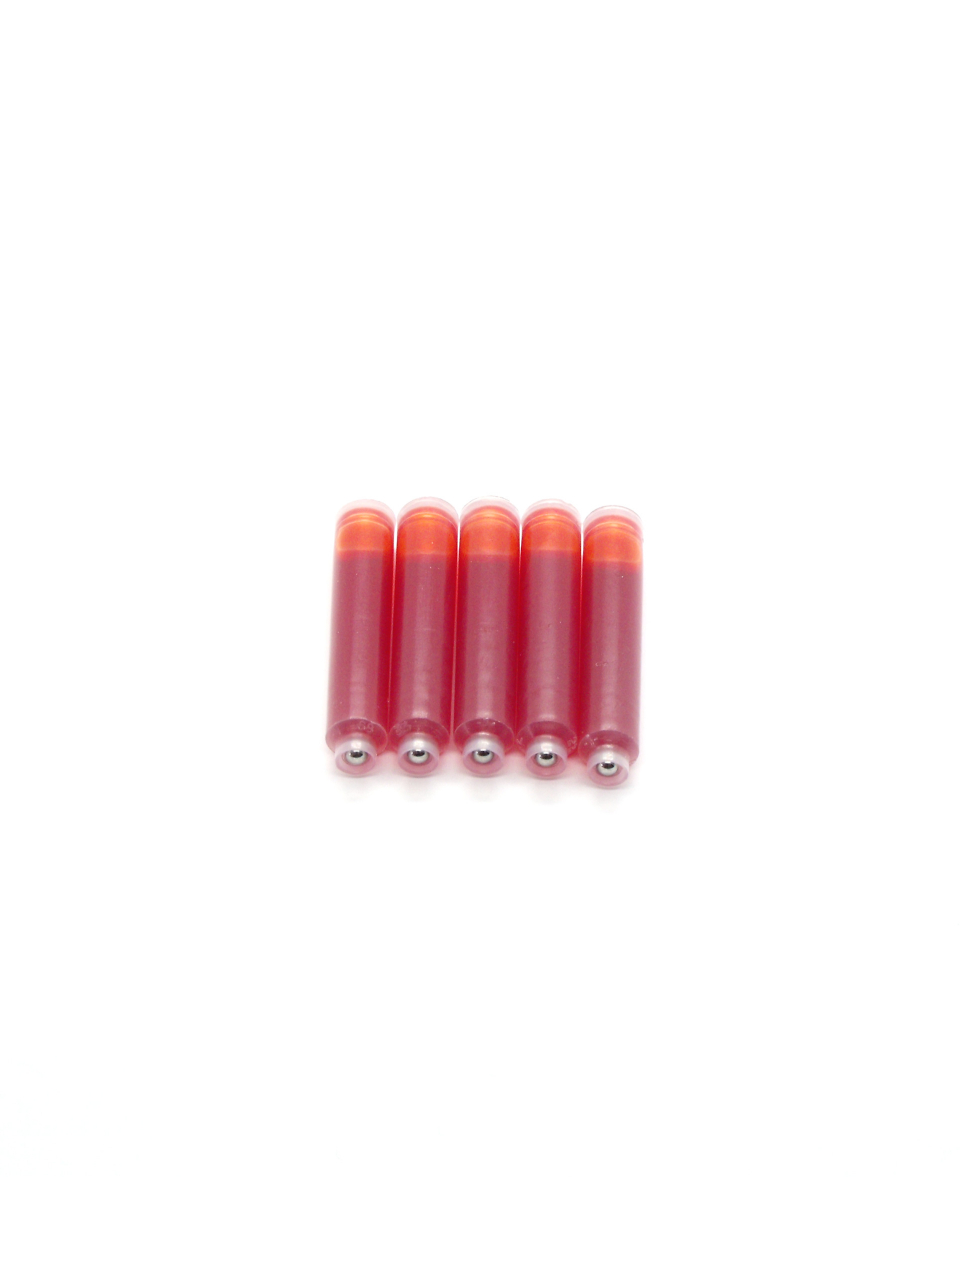 Top Ink Cartridges For Jean Pierre Lepine Fountain Pens (Orange)